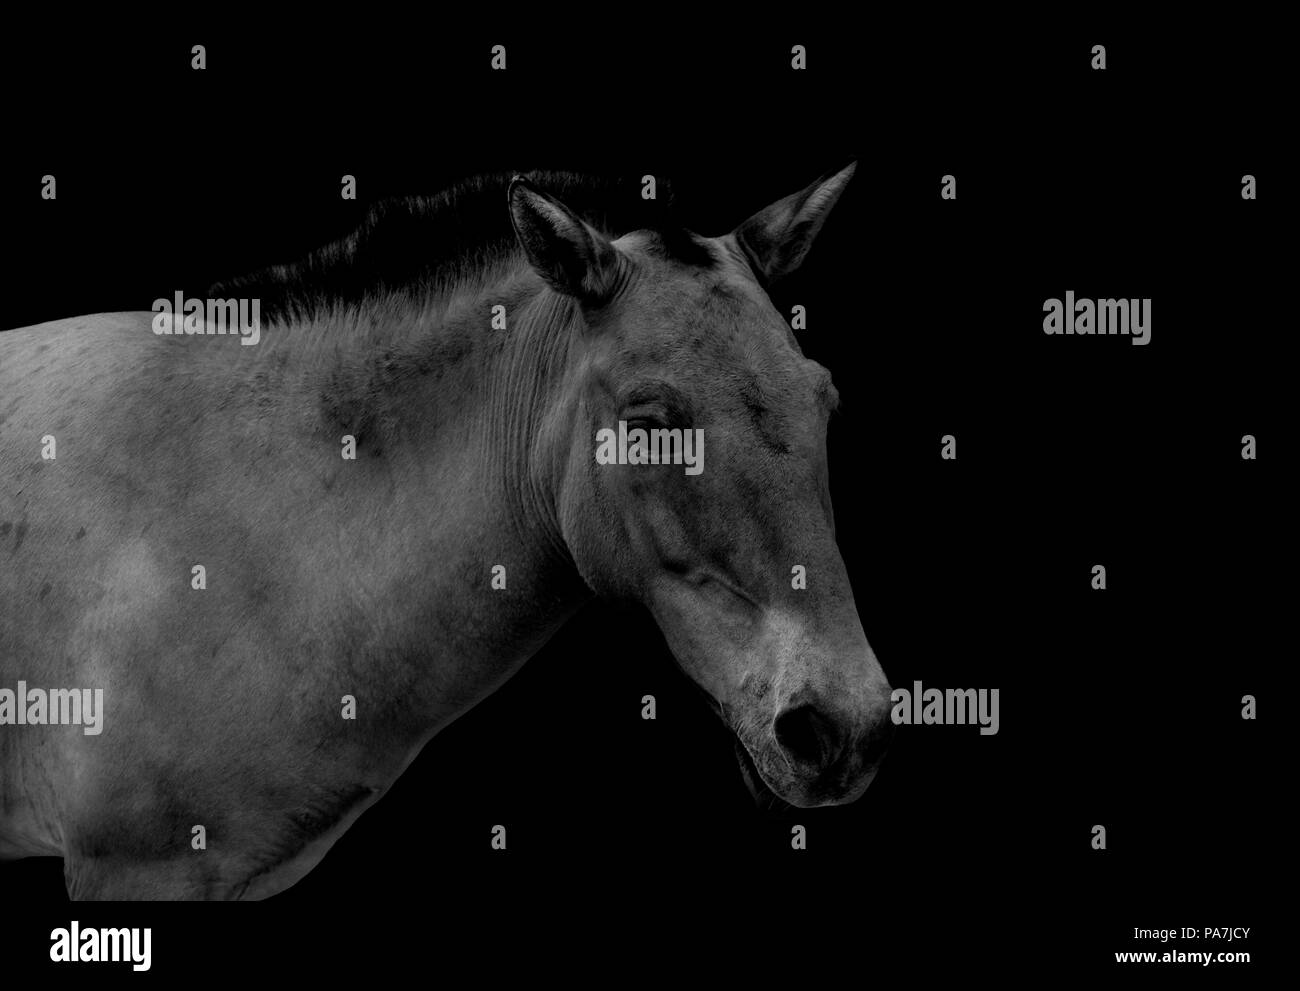 Przewalski's wild horse isolated on black background Stock Photo